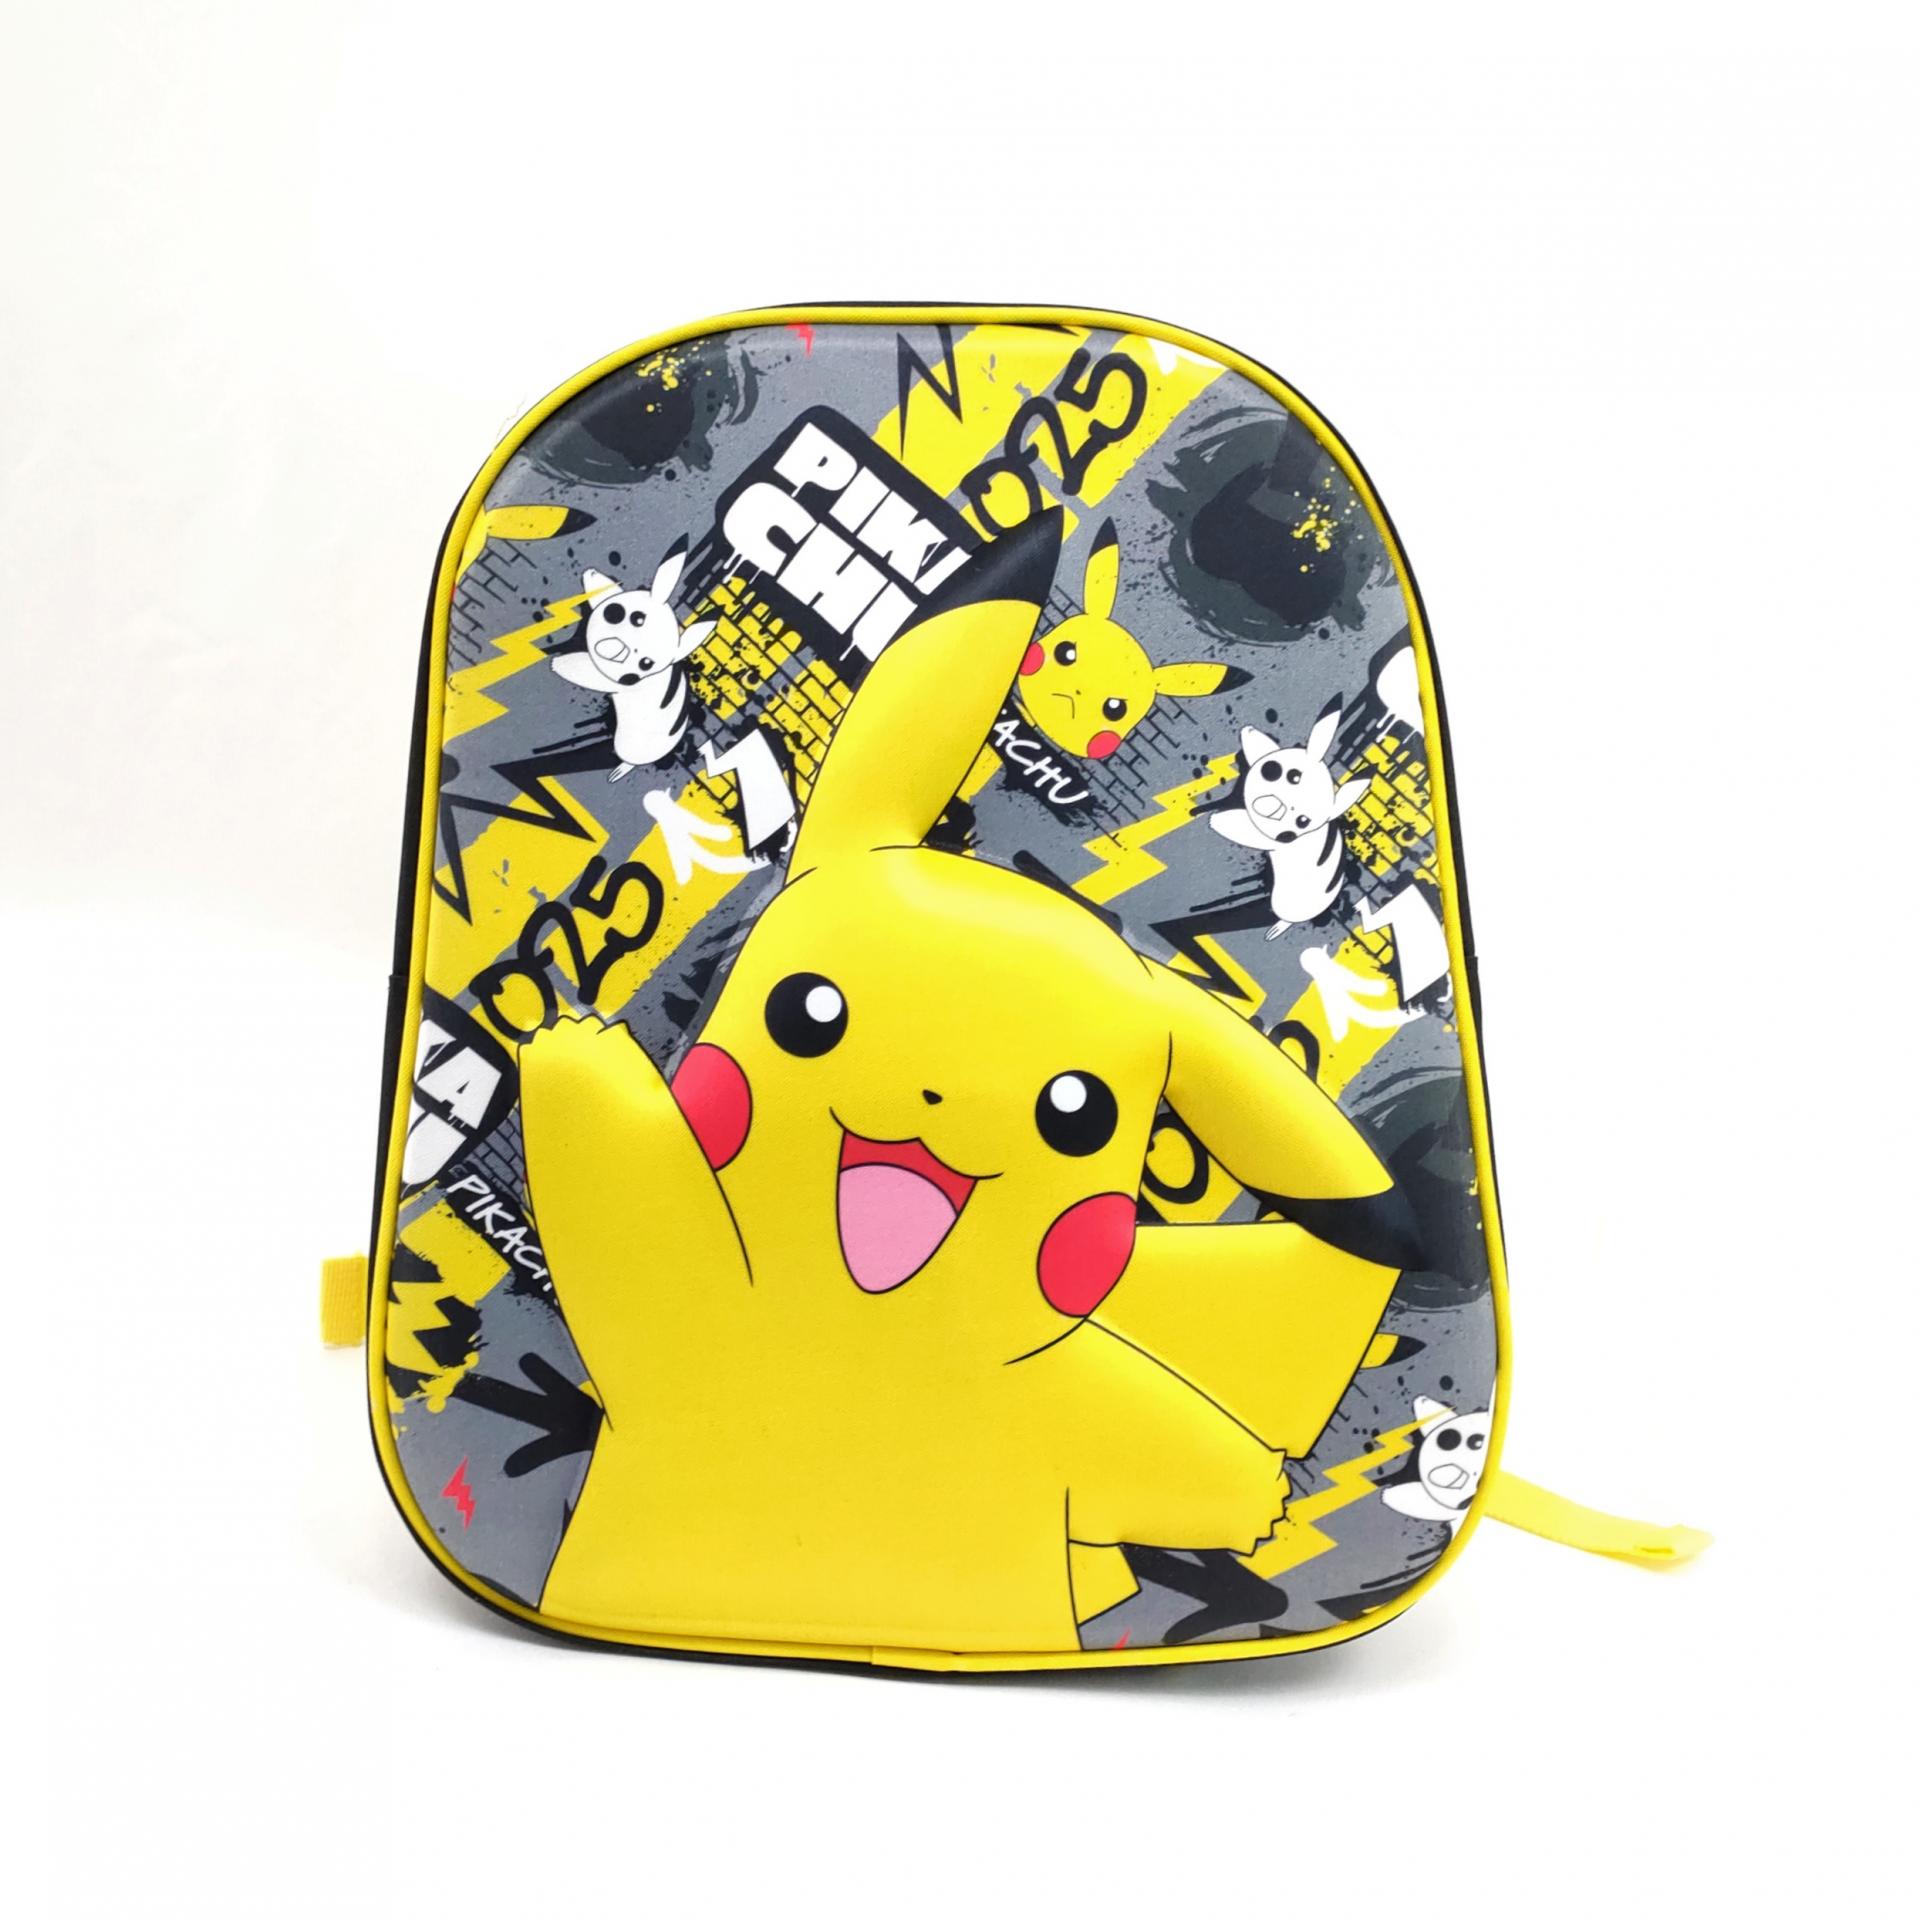 Mochila Pikachu 3d Pokemon D POKEMON